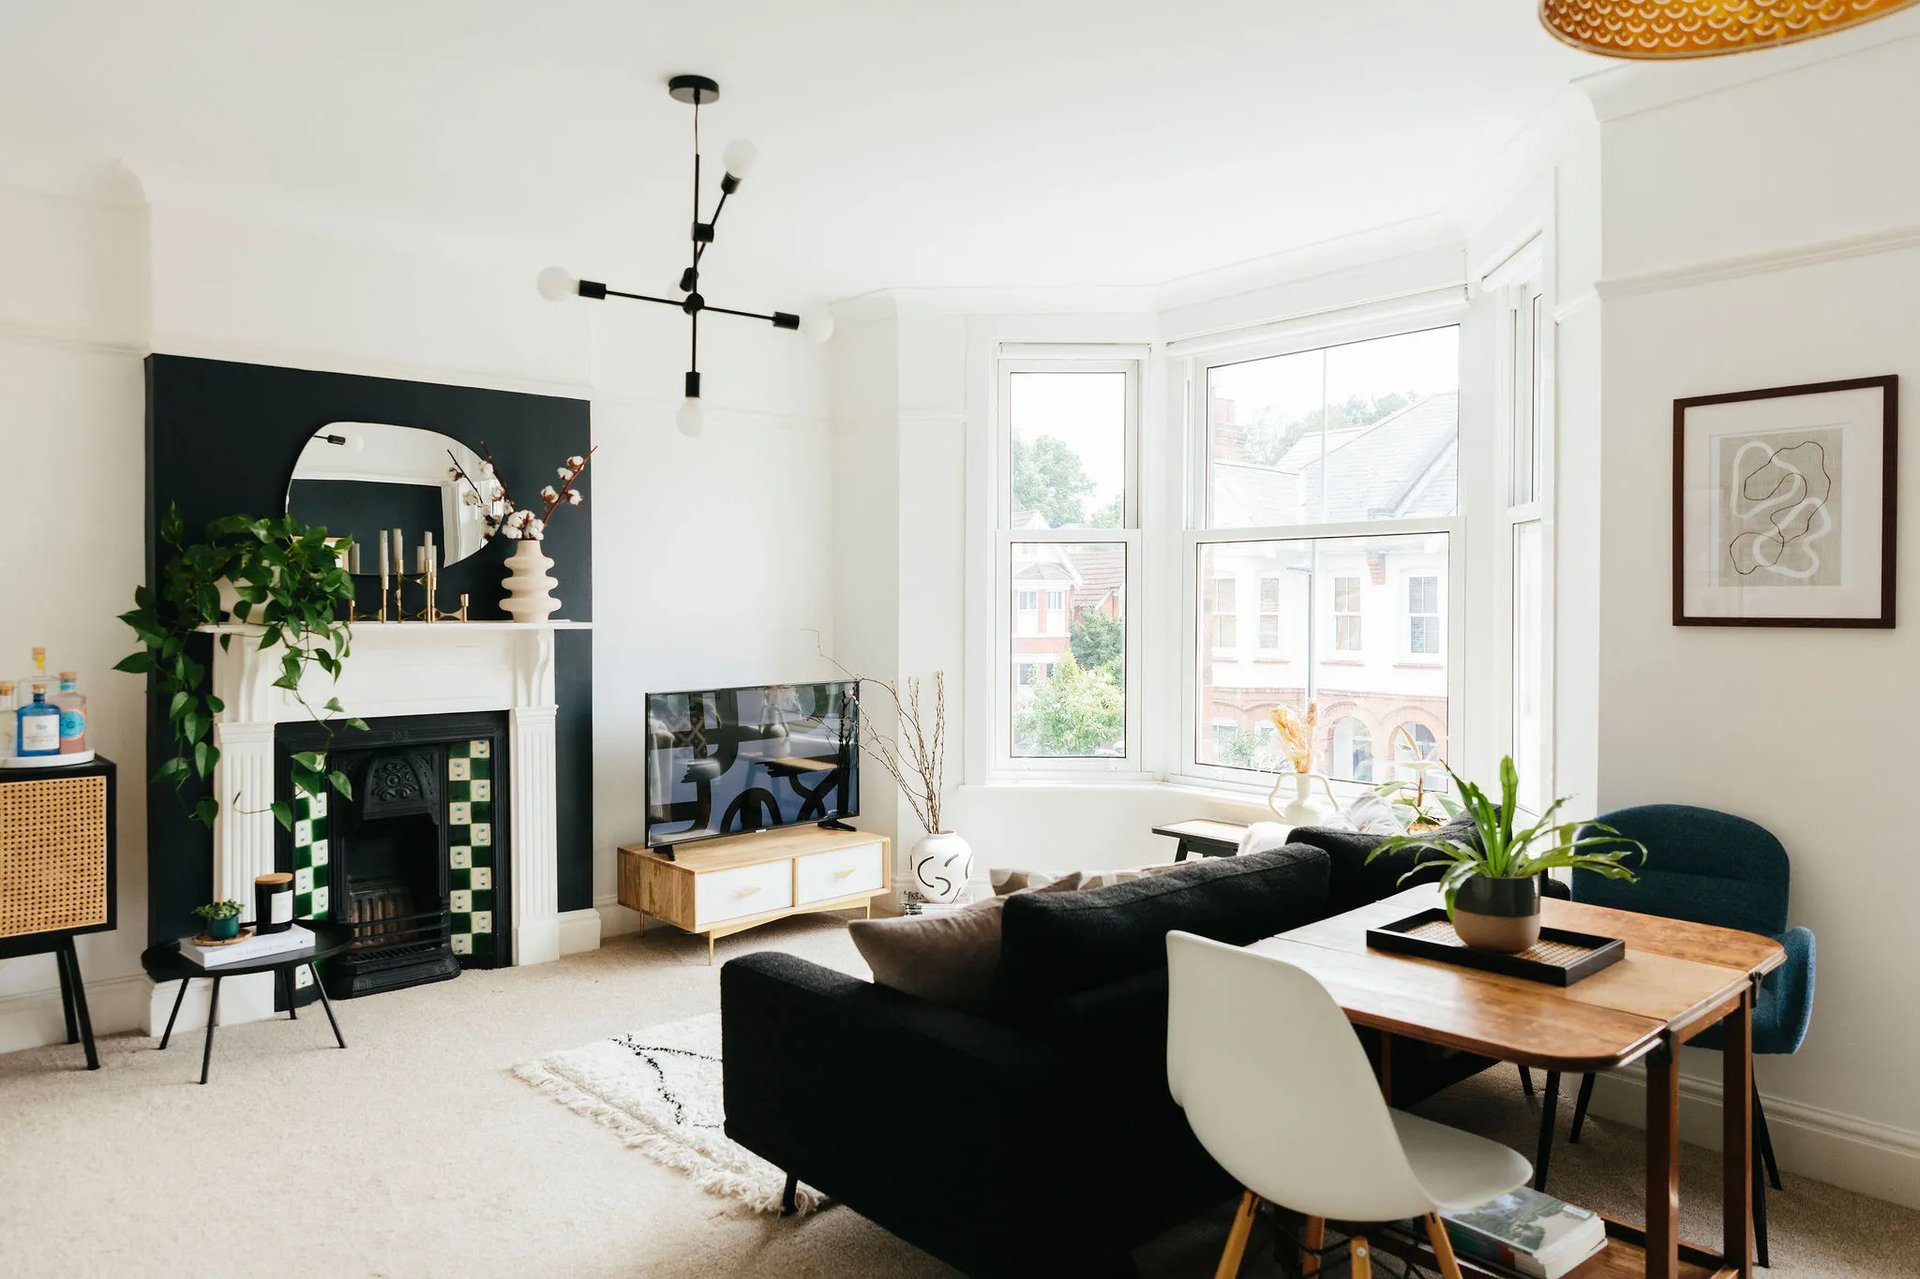 Living room chimney breast ideas